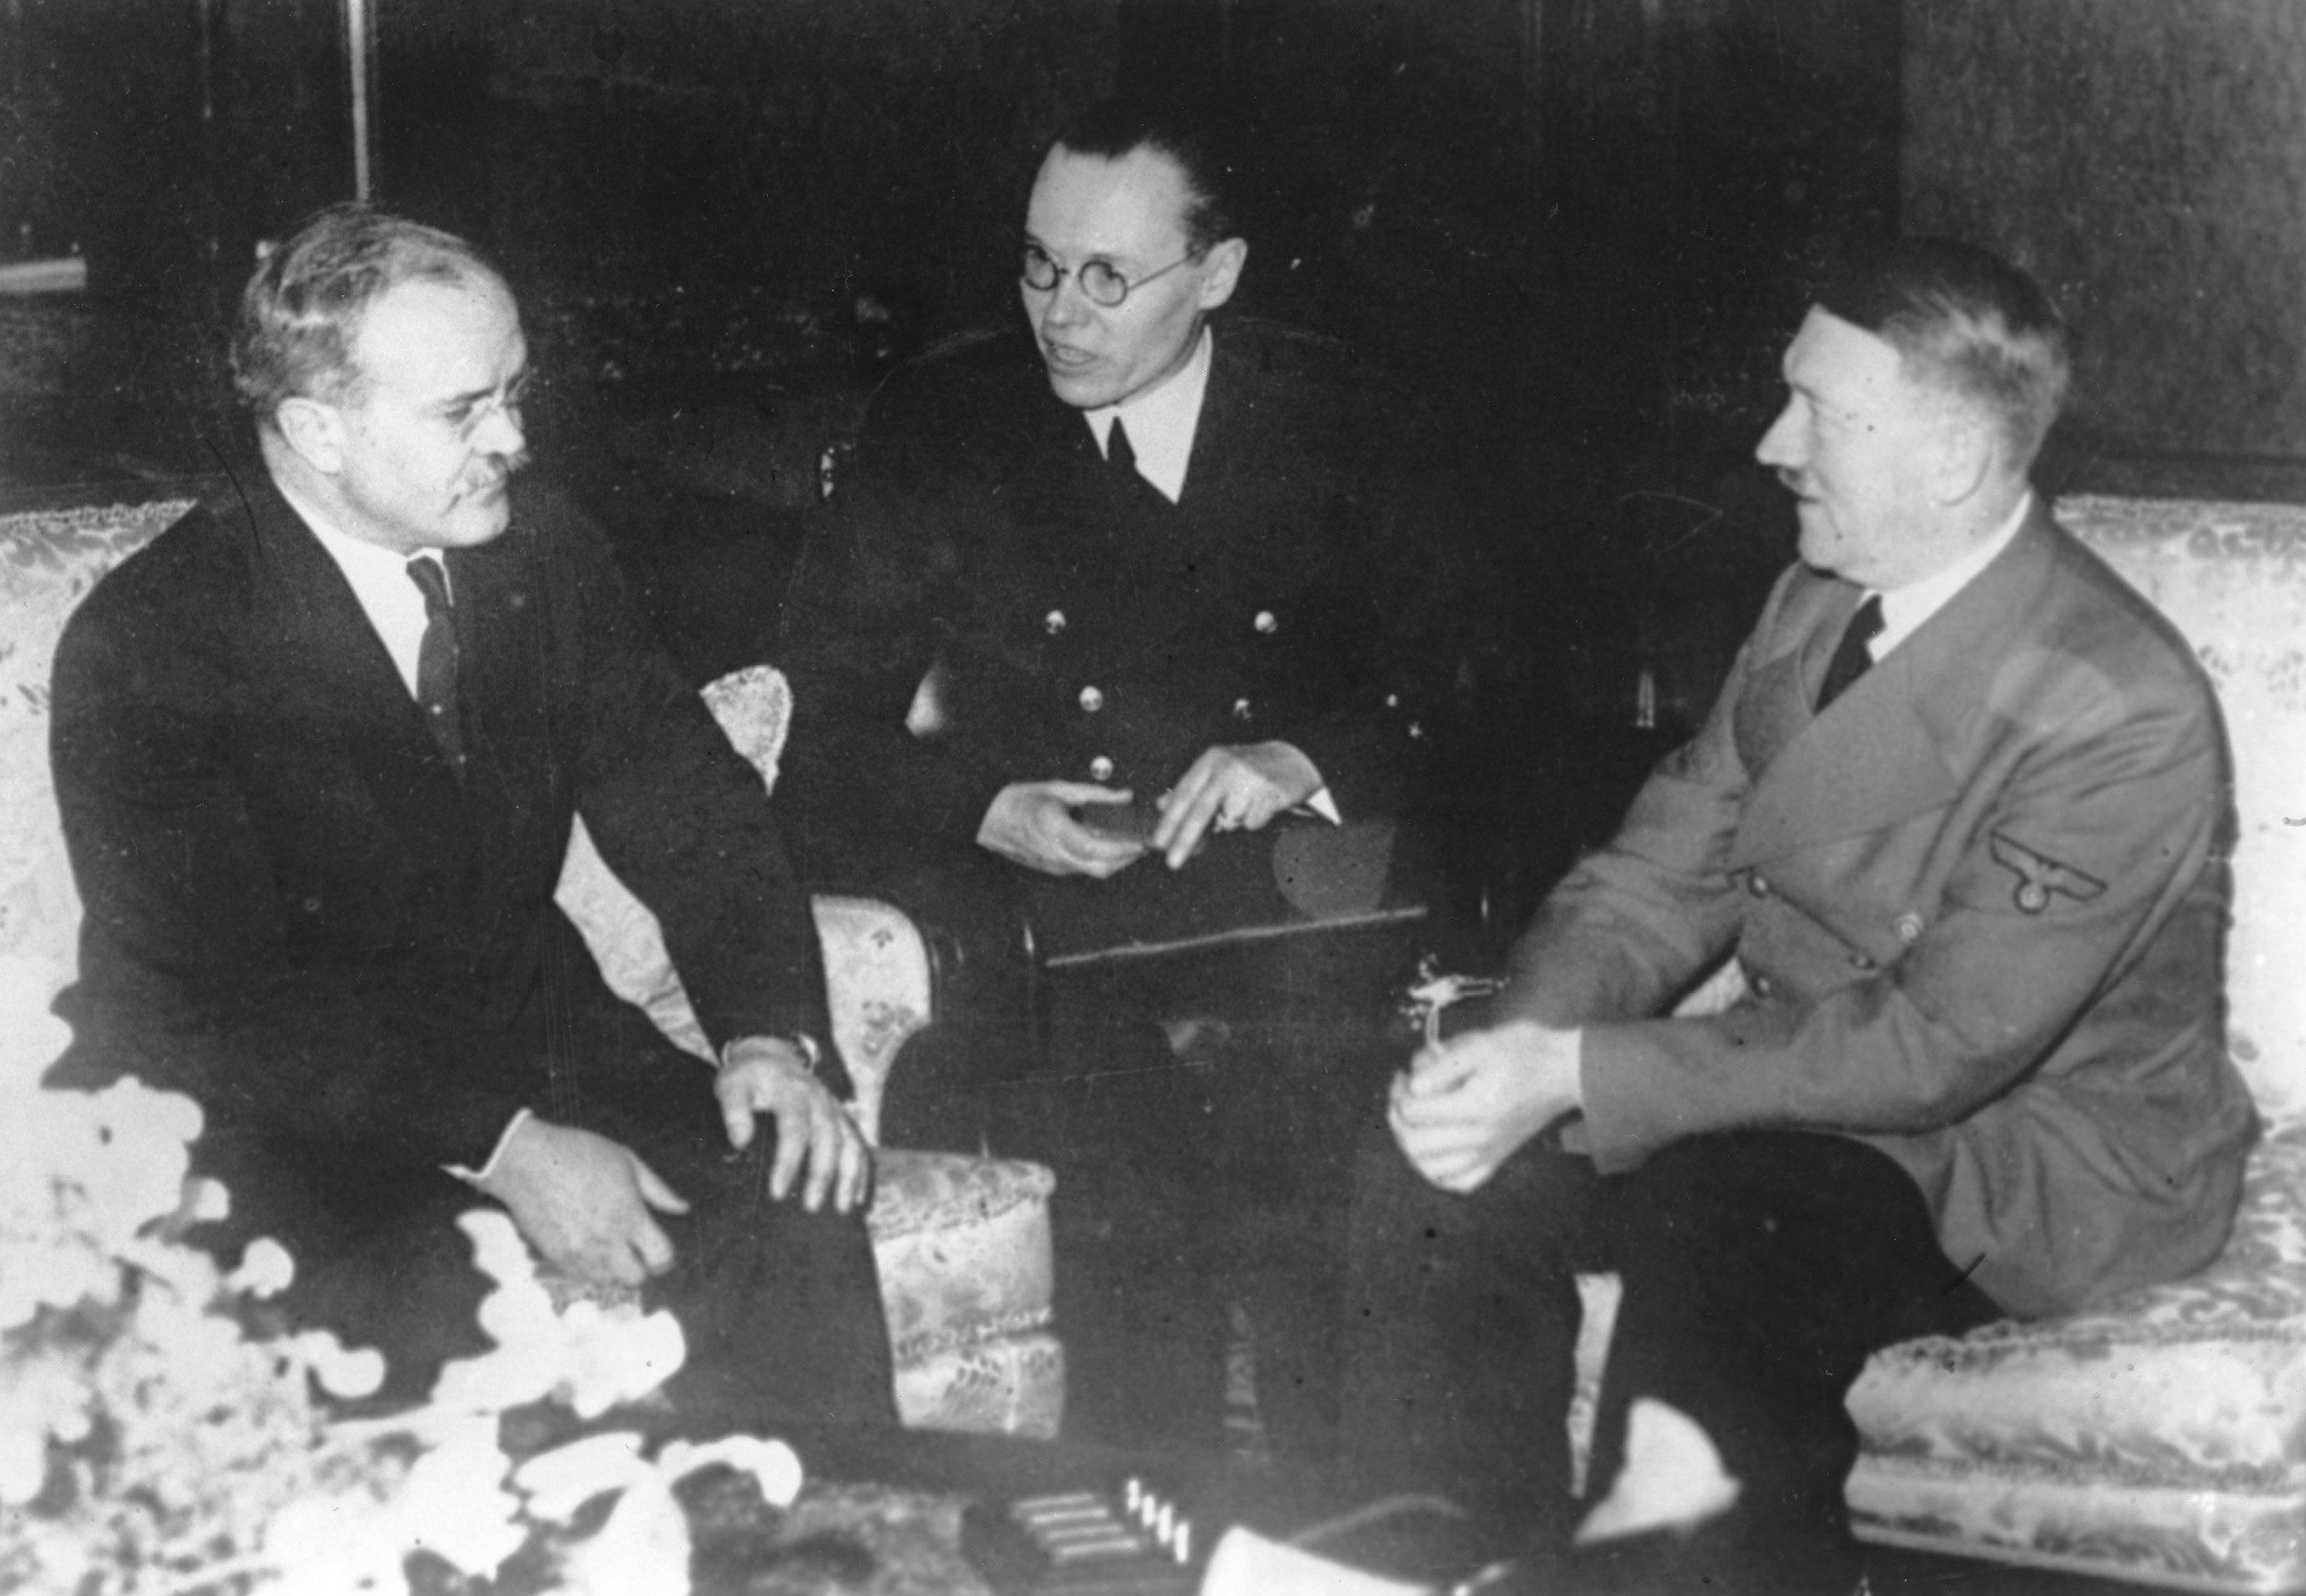 Совет историка Роджера Мурхауса: «Главный урок 1939 года — опасайтесь стран-изгоев!» (Delfi, Литва)